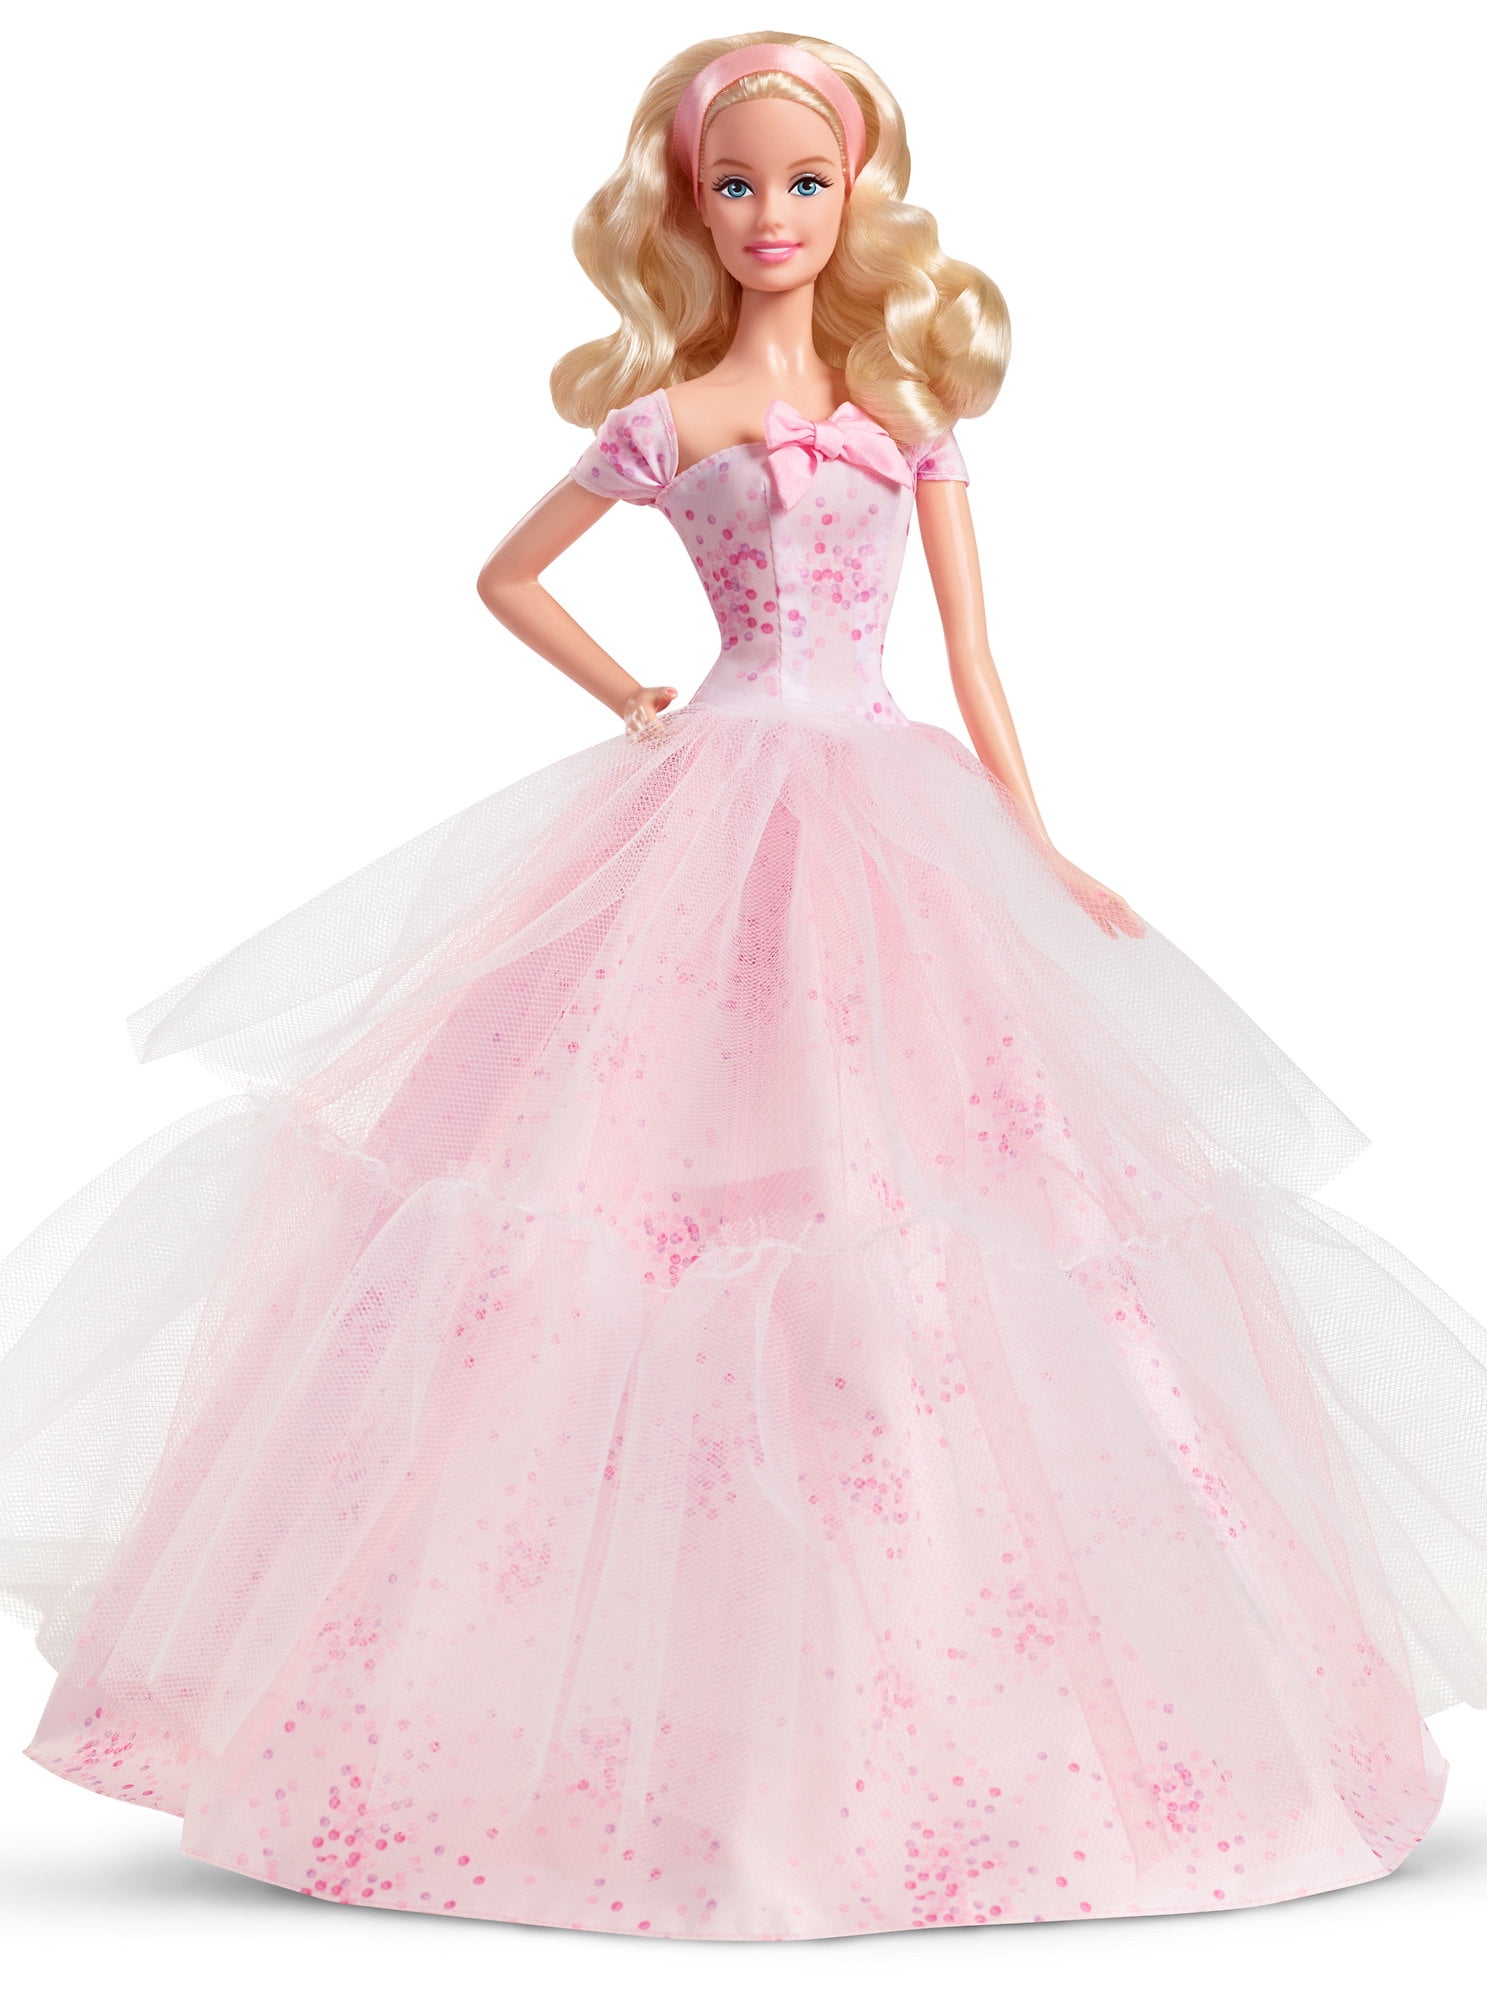 Barbie 2016 Birthday Wishes Barbie Doll - Walmart.com